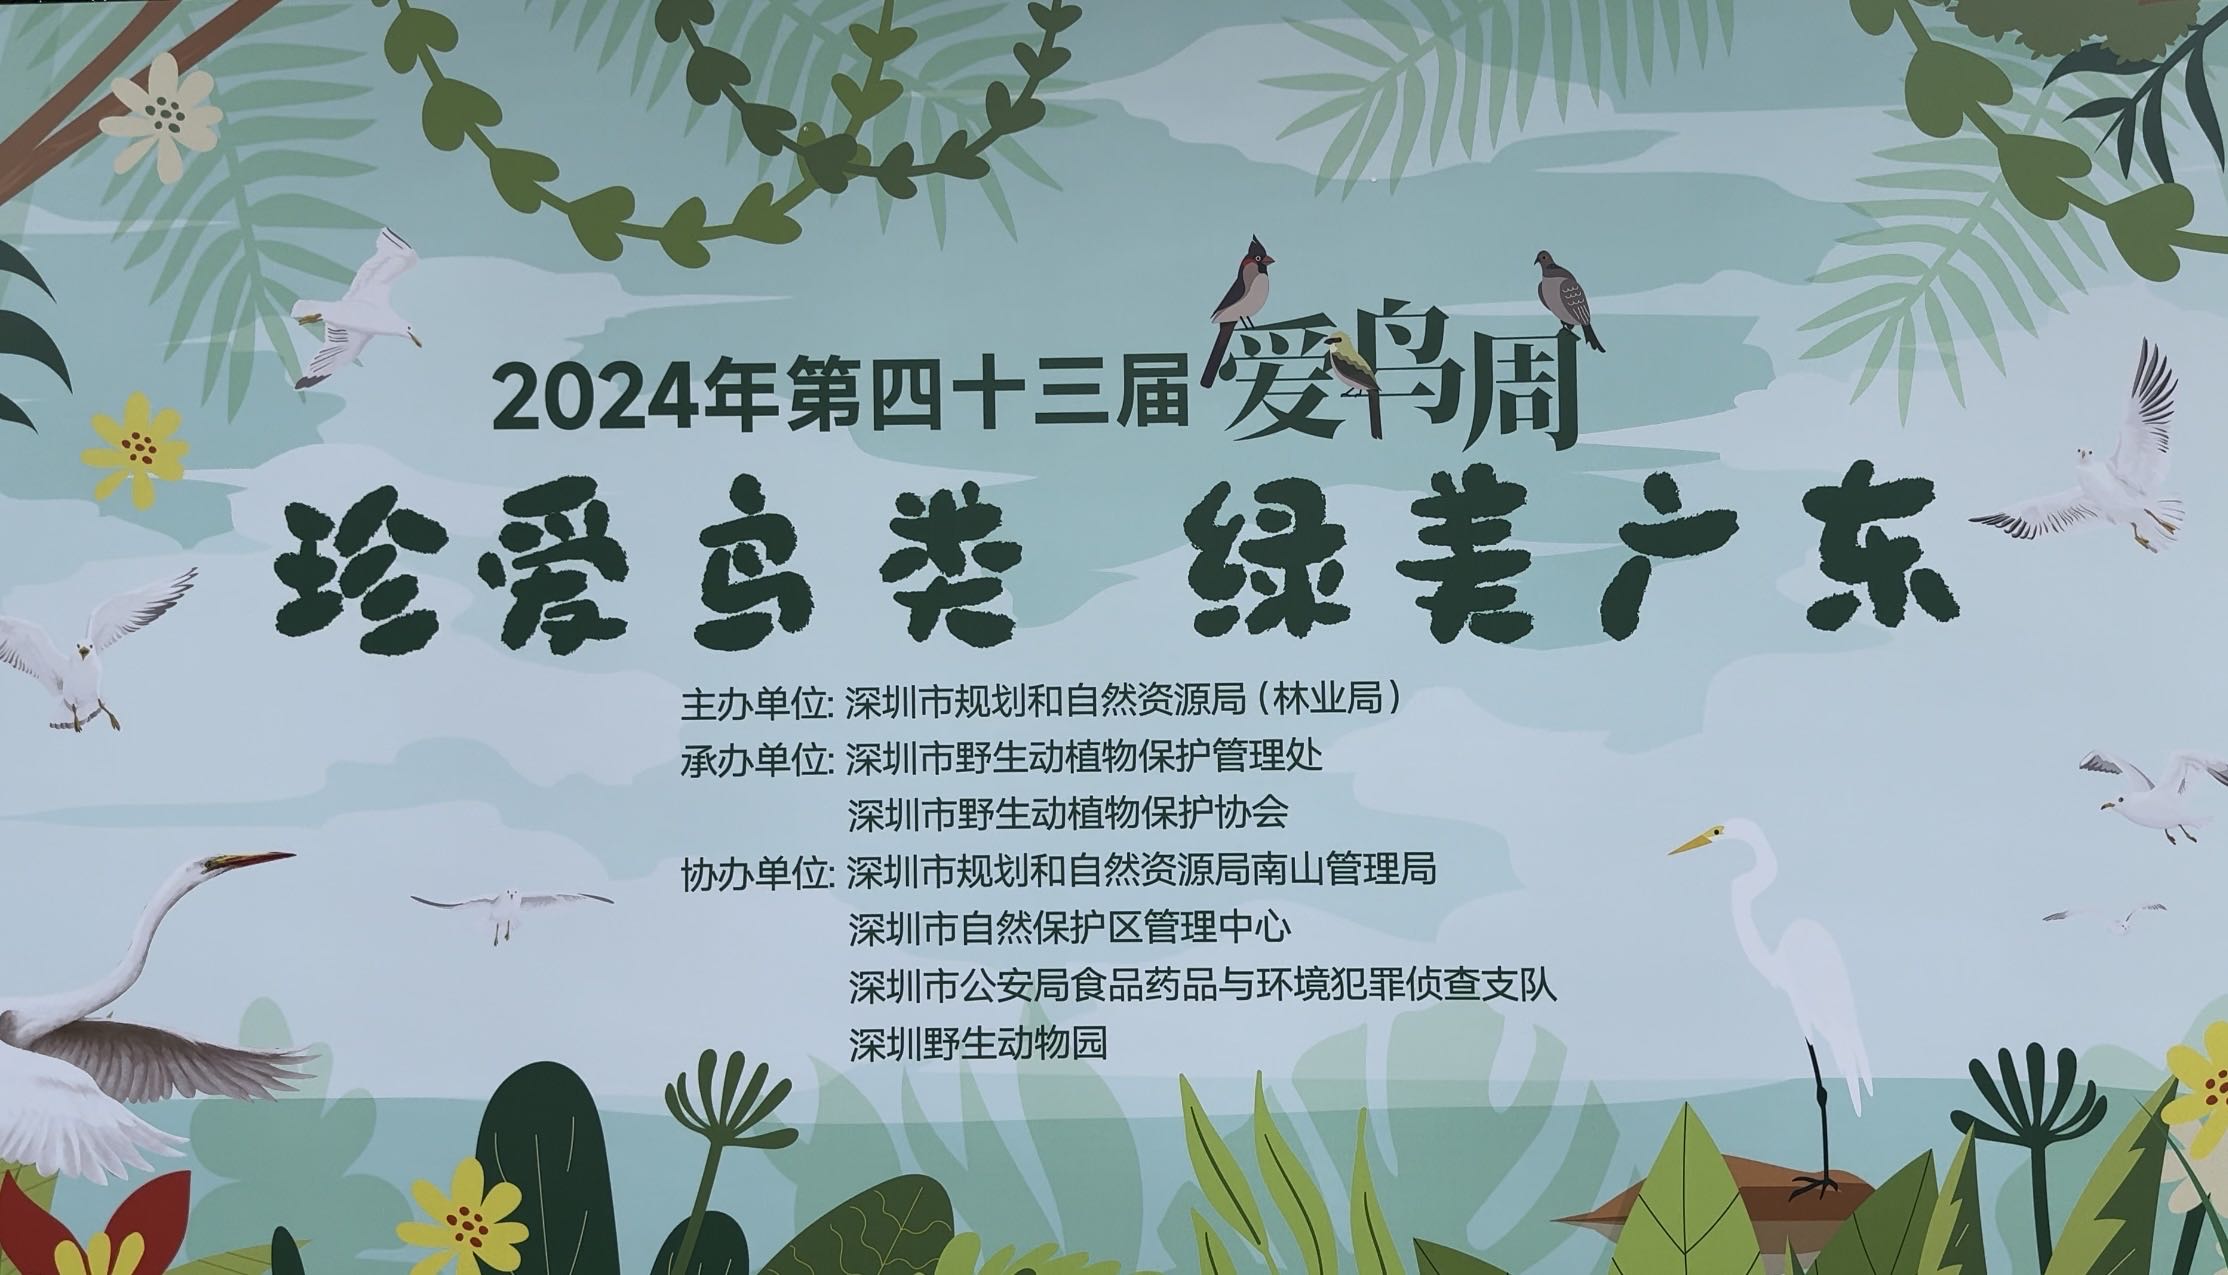 深圳舉辦愛鳥周 助力綠美深圳生態建設